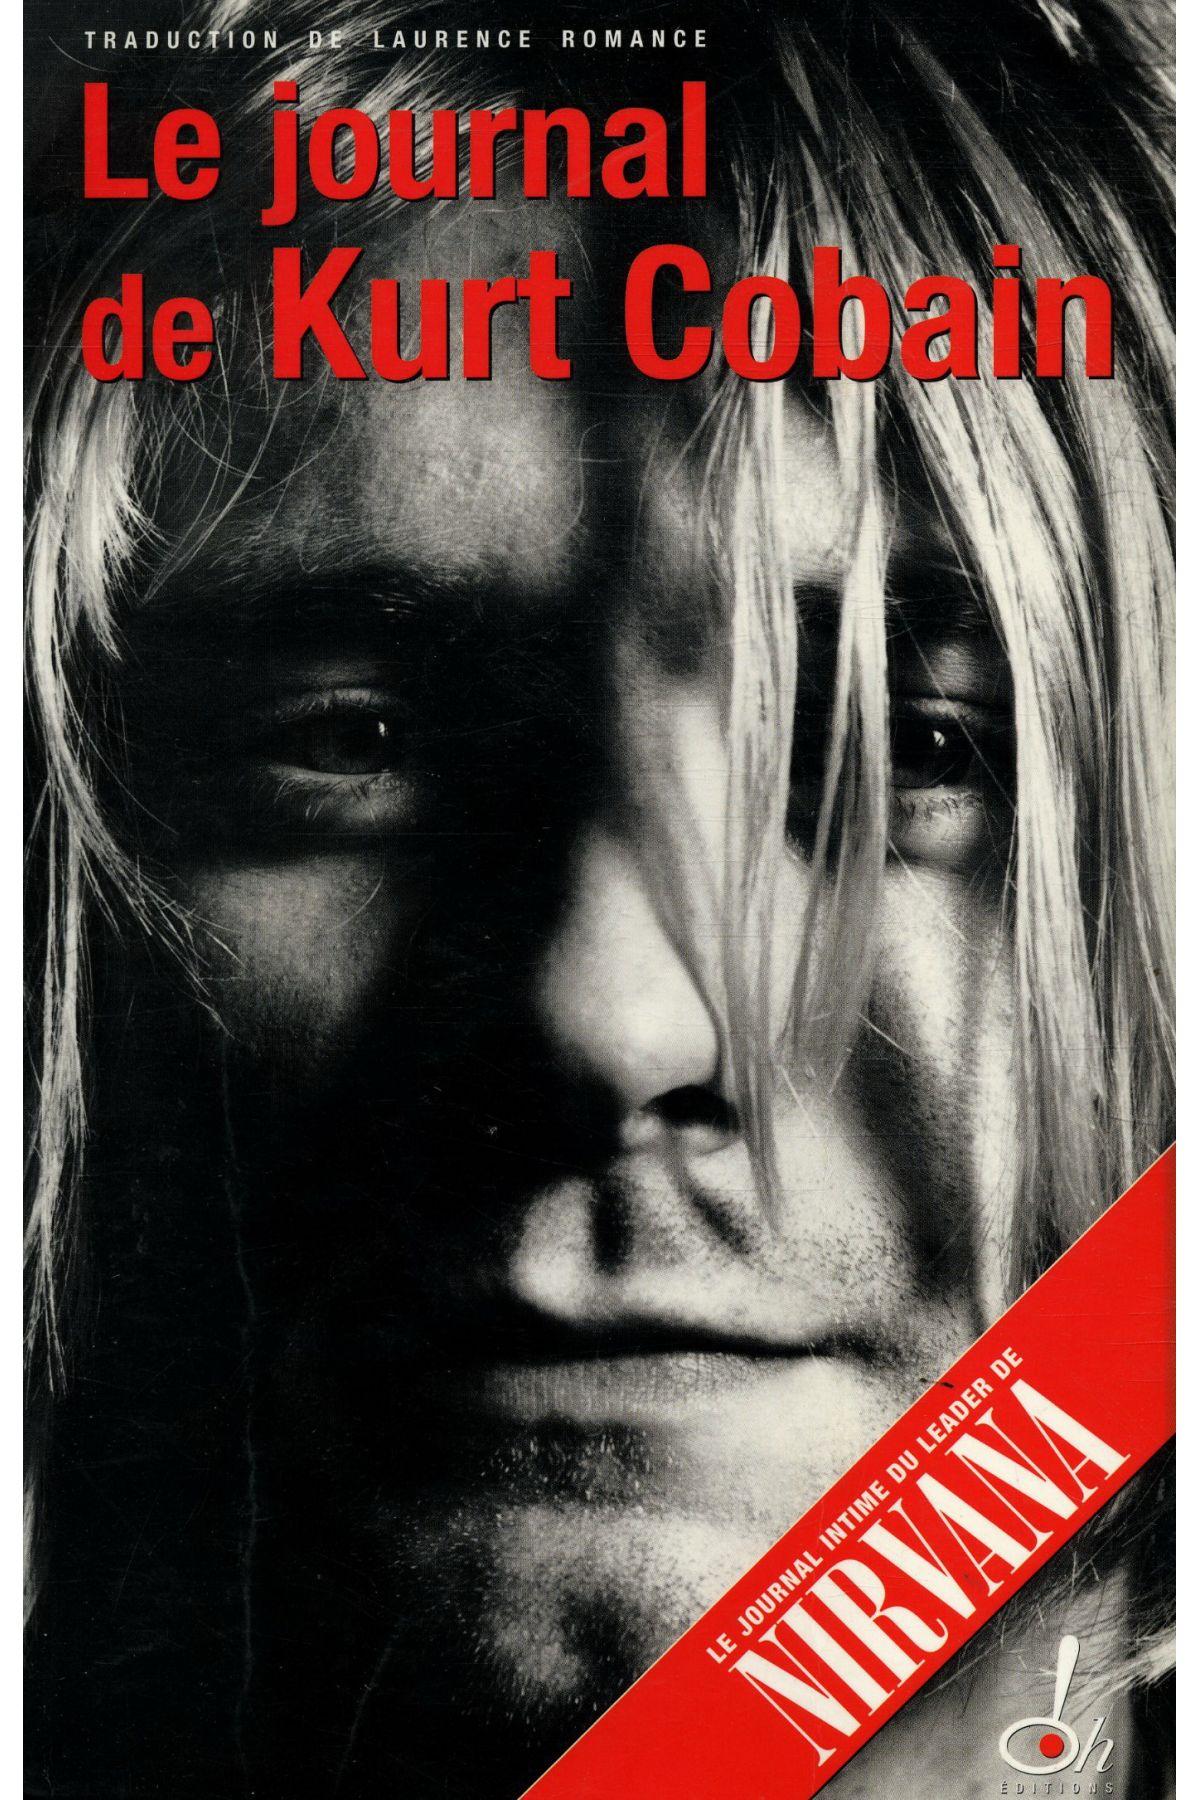 Le journal de Kurt Cobain : contes d’un esprit tortueux et torturé